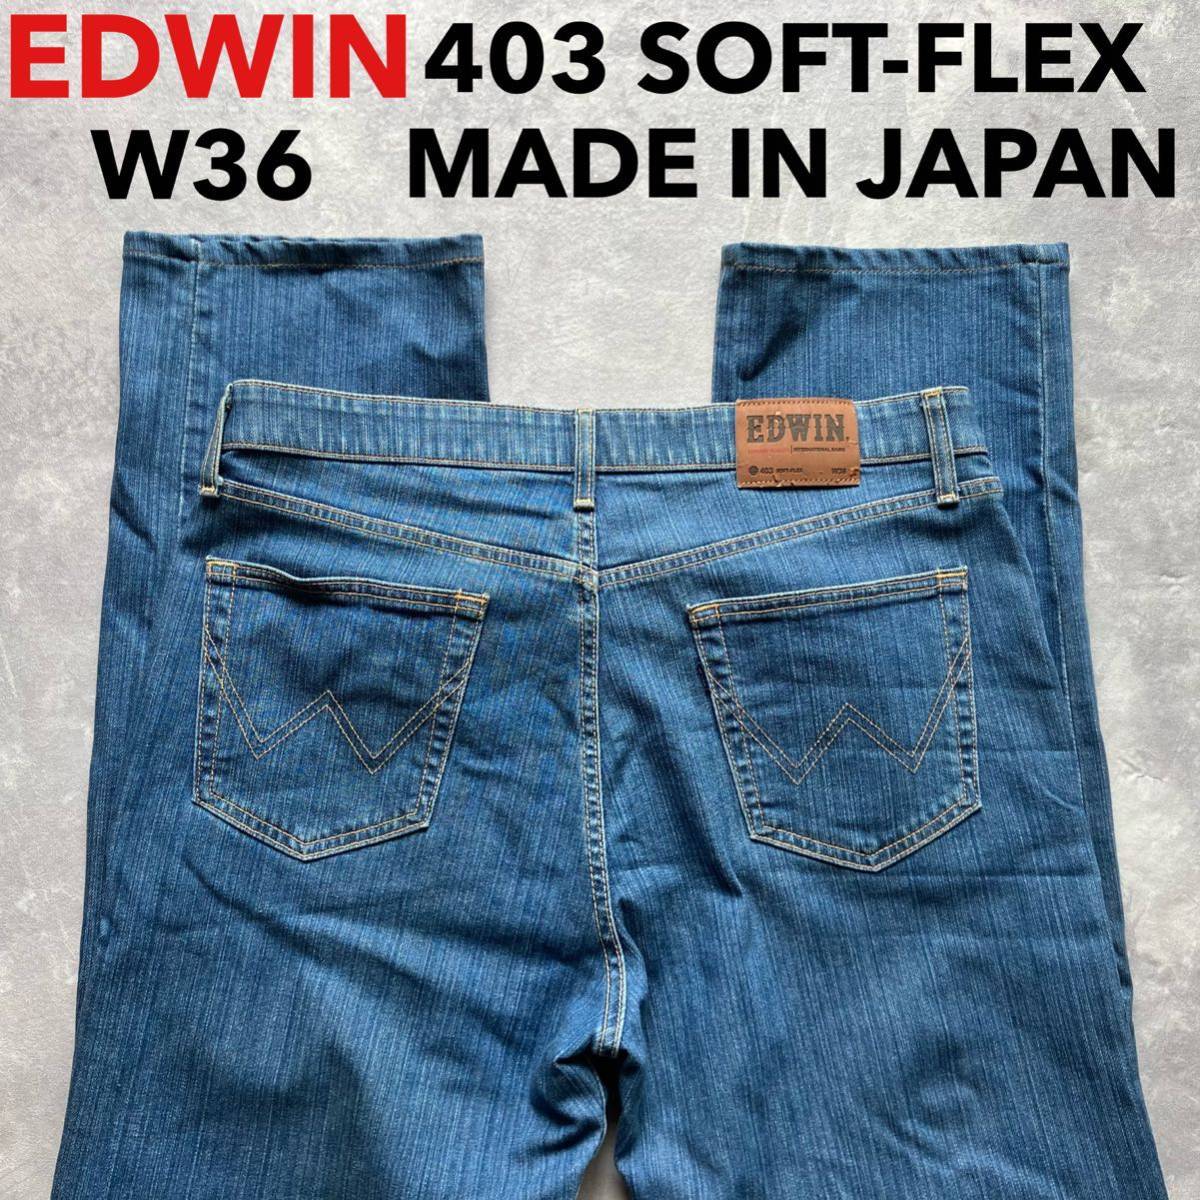 即決 W36 エドウィン EDWIN S403 SOFT-FLEX 柔らか ストレッチジーンズ ストレート 日本製 MADE IN JAPAN インターナショナルベーシック_画像1